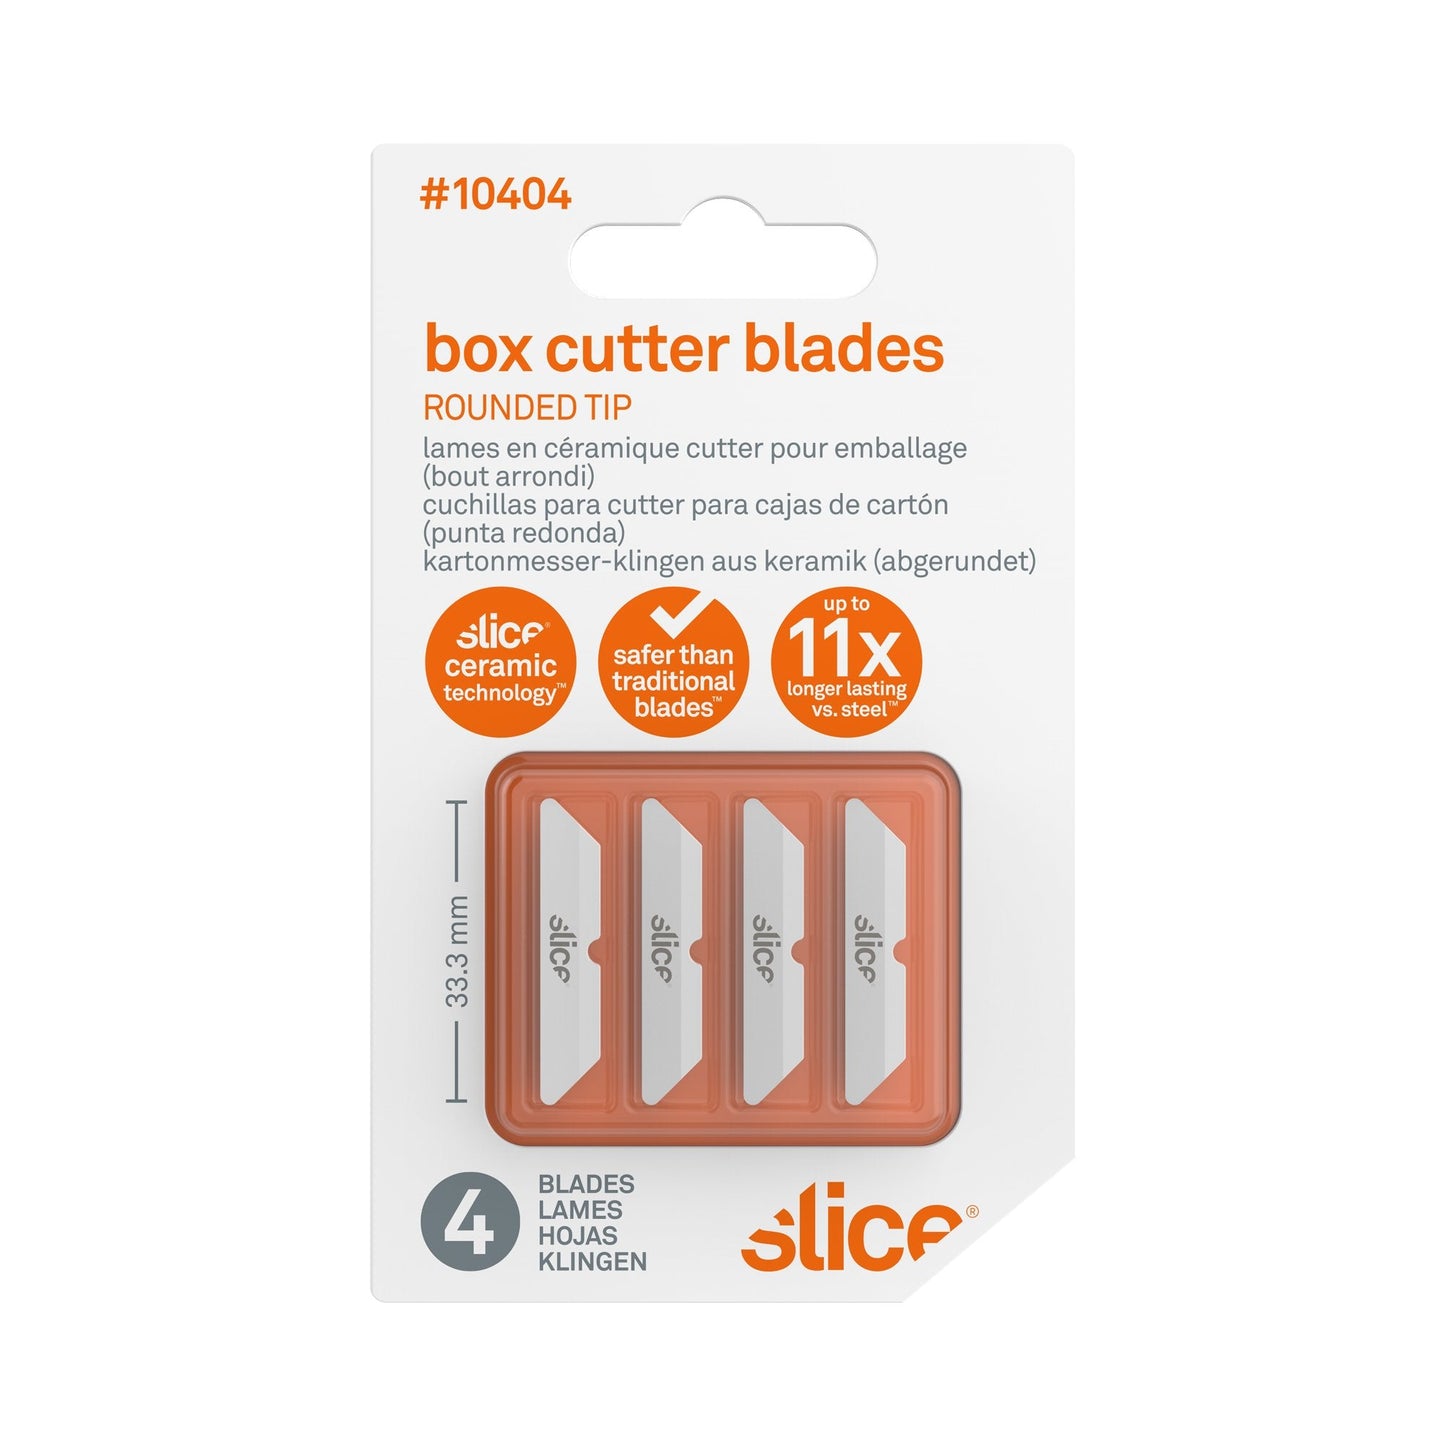 Cuchillas para cutter para cajas de cartón (punta redonda)